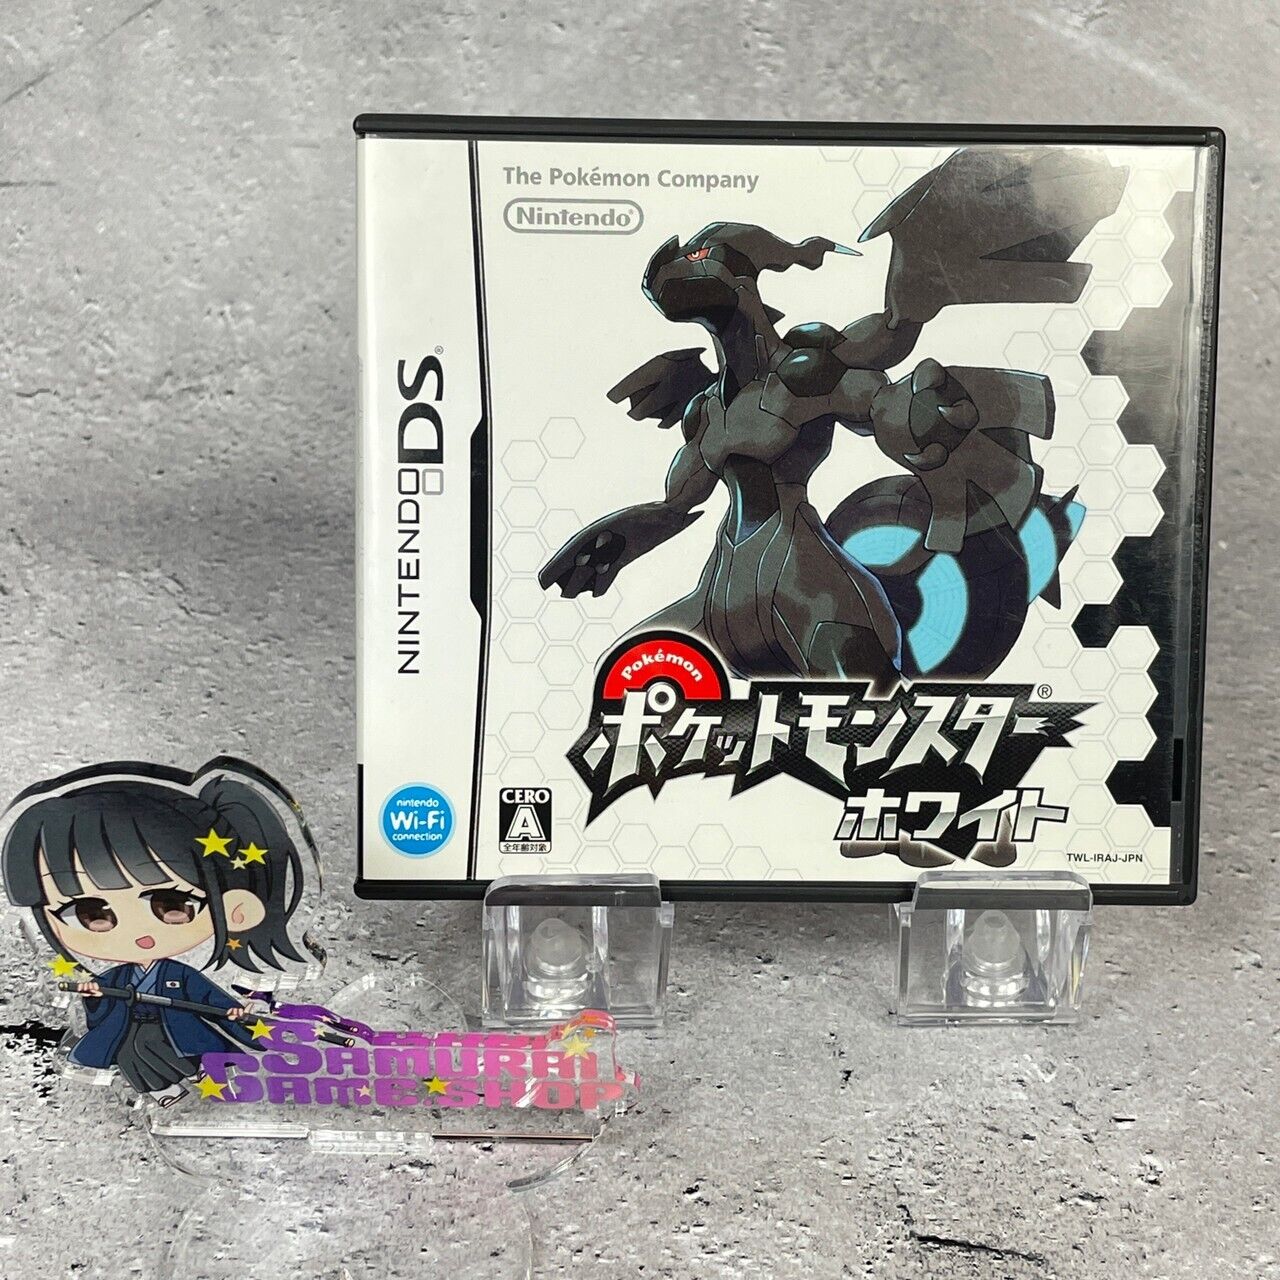 Pokémon White & Black Set of 2 Type Nintendo DS Japanese Language Edition set